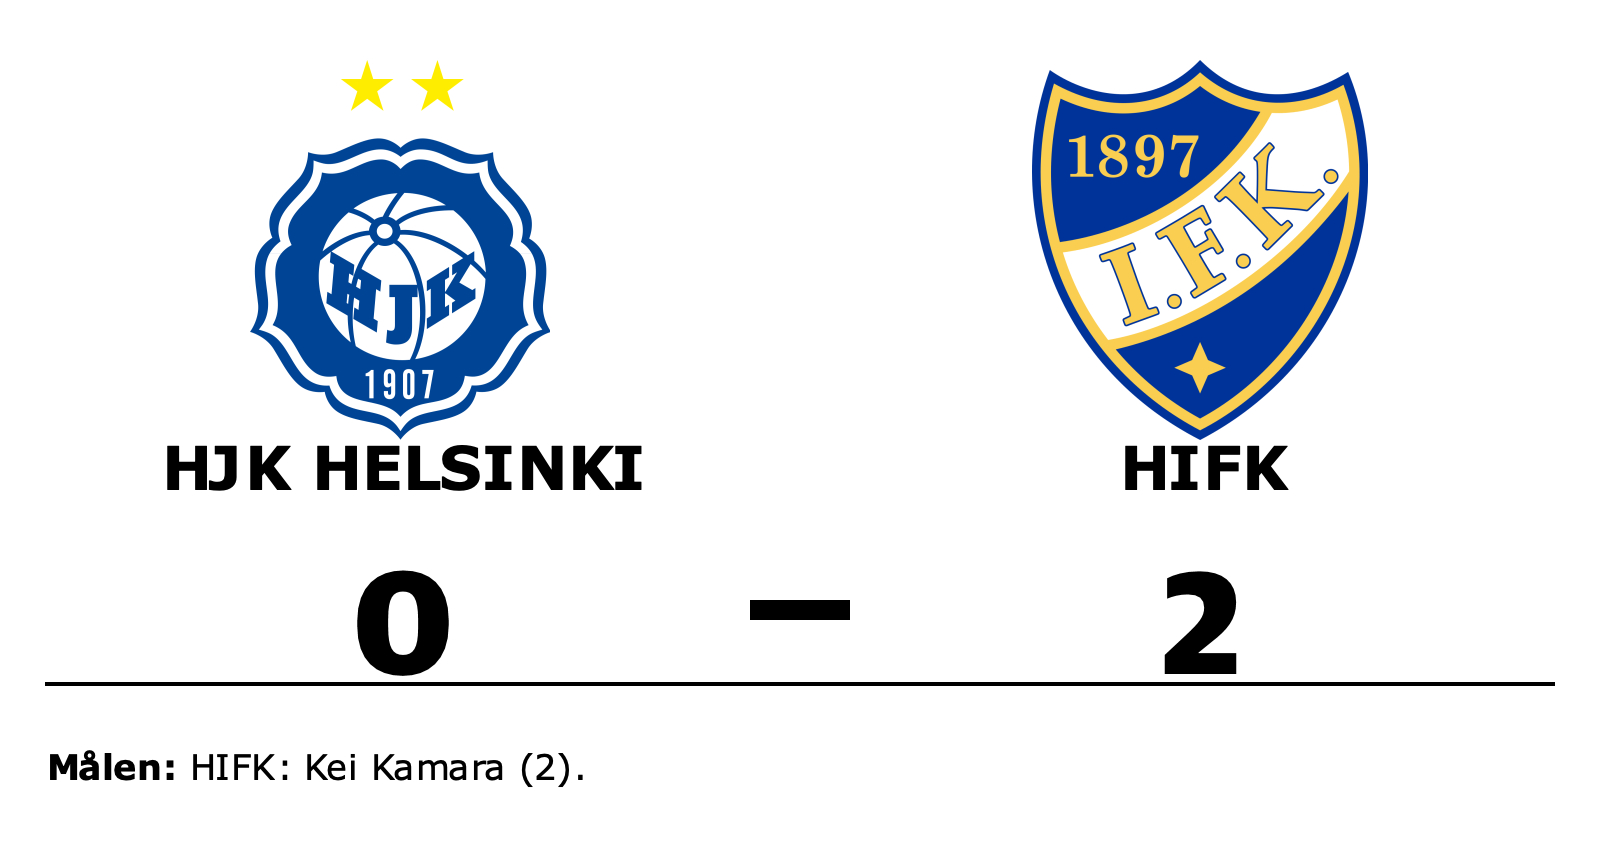 HJK Helsinki förlorade mot HIFK